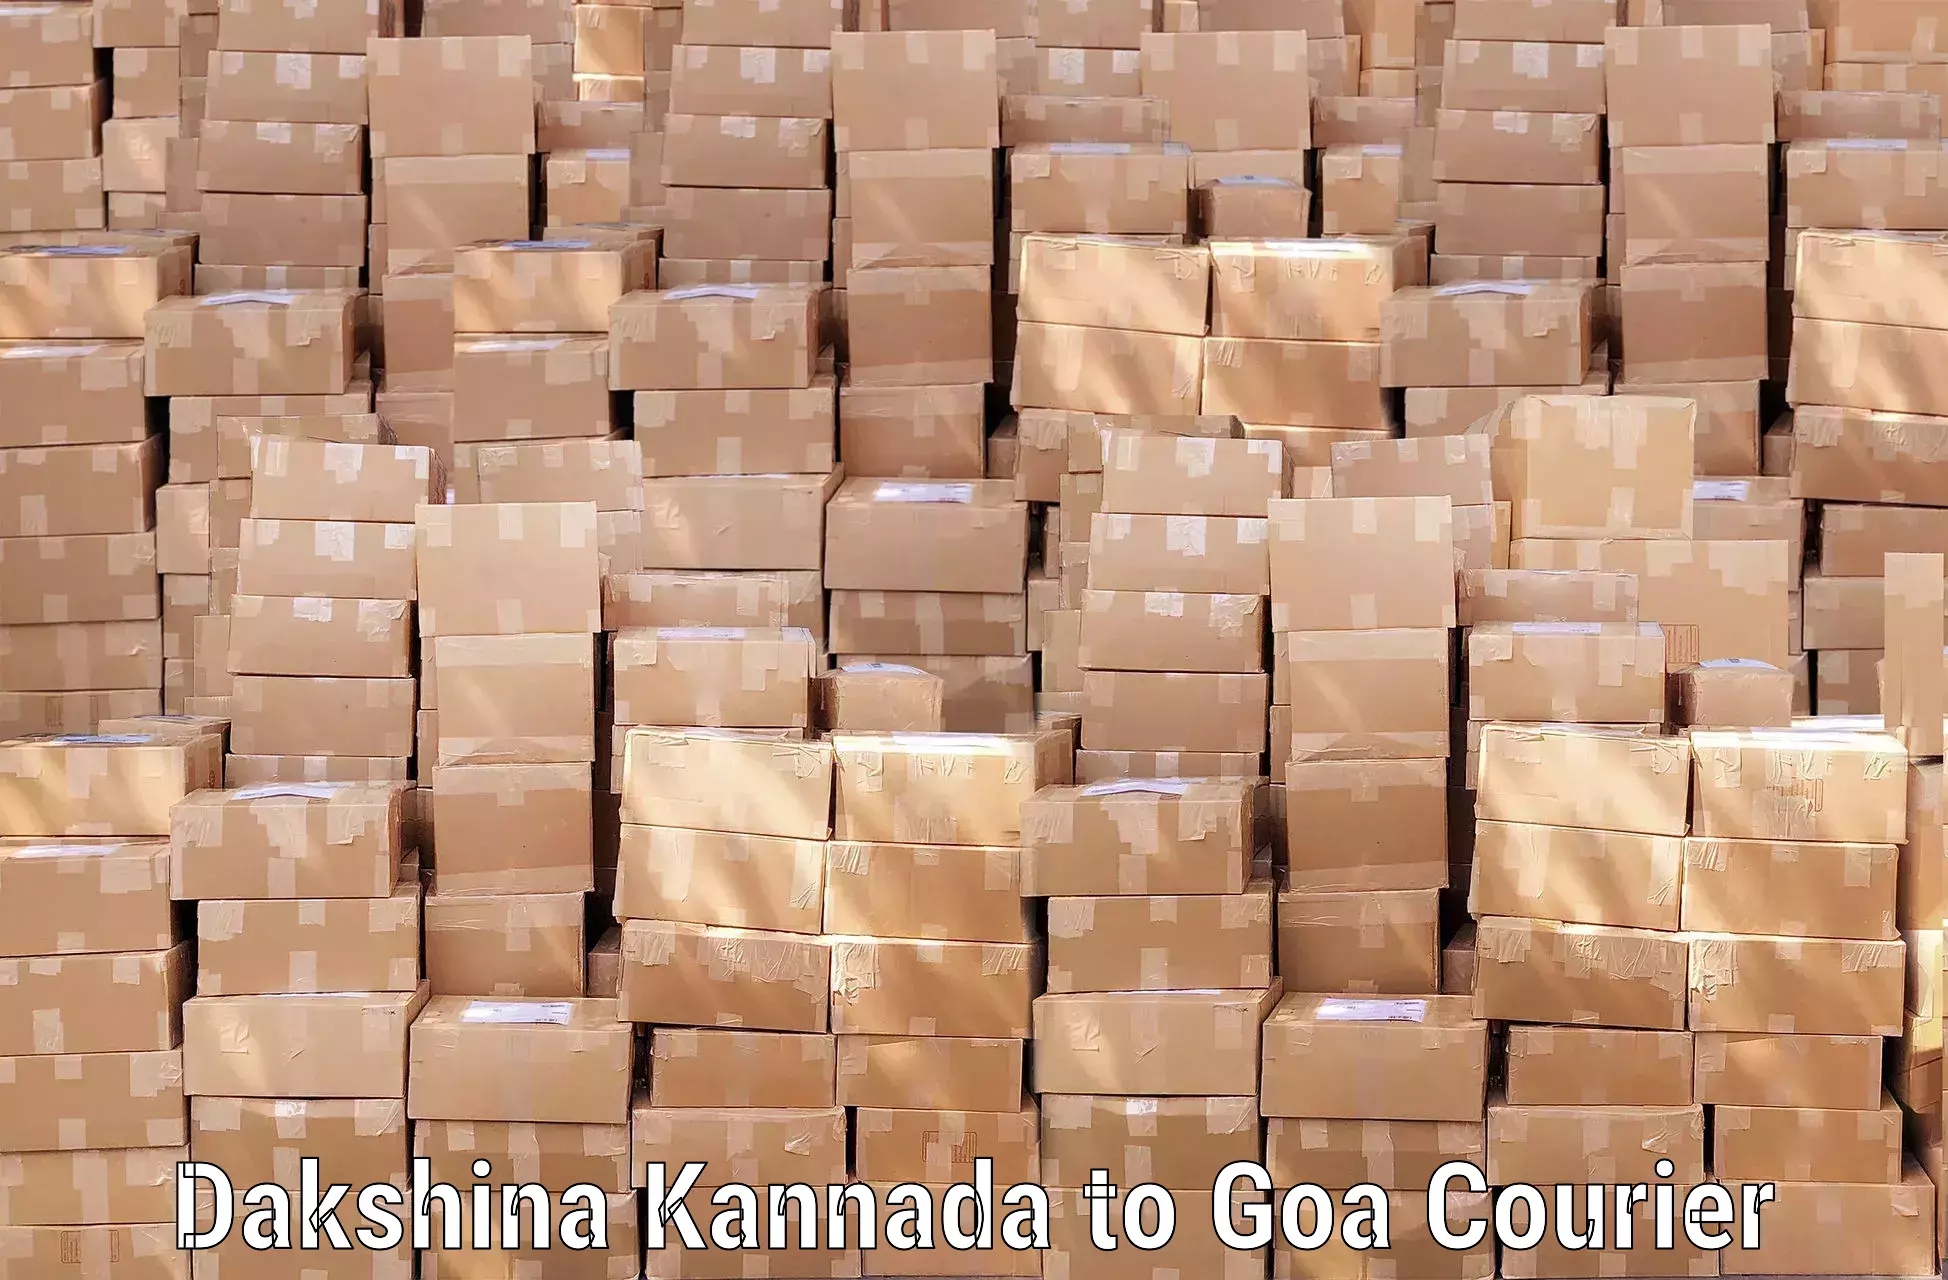 Luggage transport consulting Dakshina Kannada to Goa